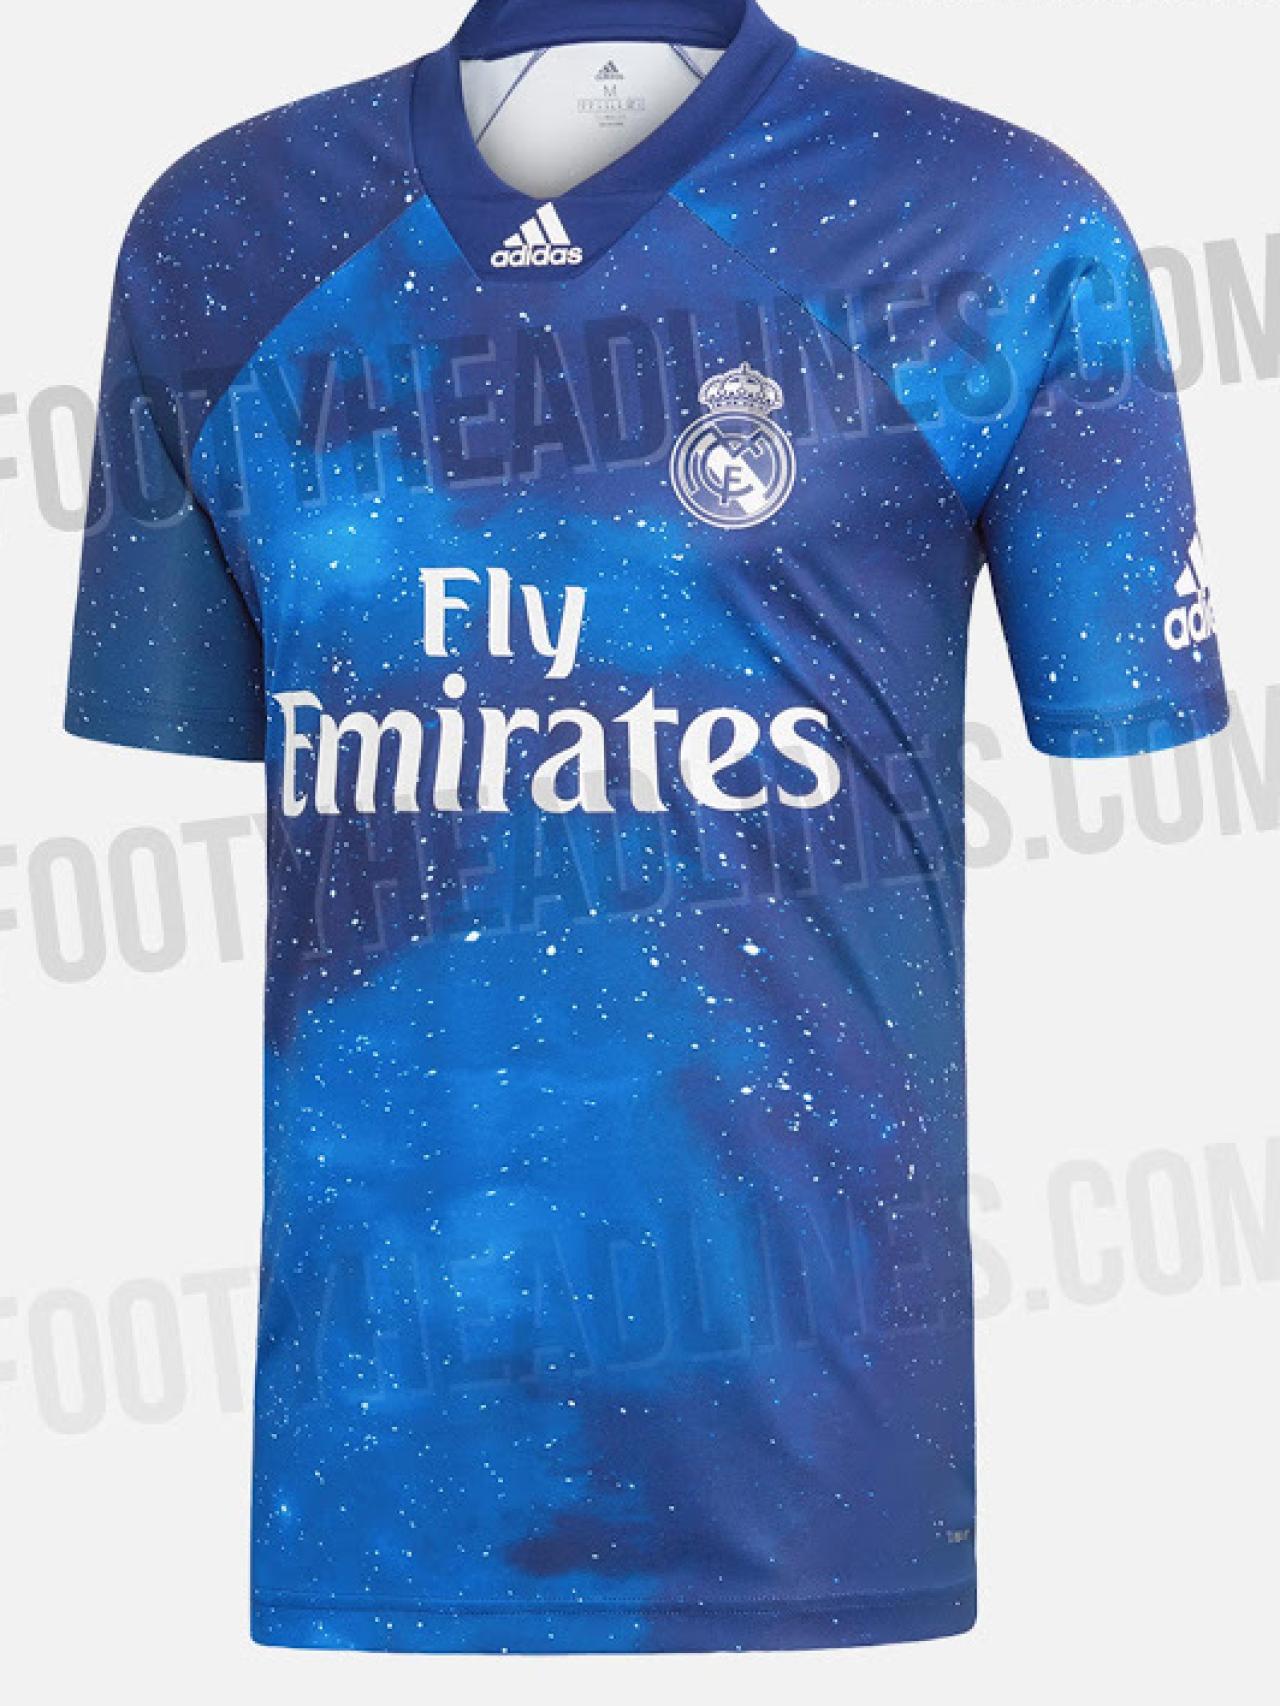 EA Sports y Adidas diseñan camiseta más galáctica del Real Madrid